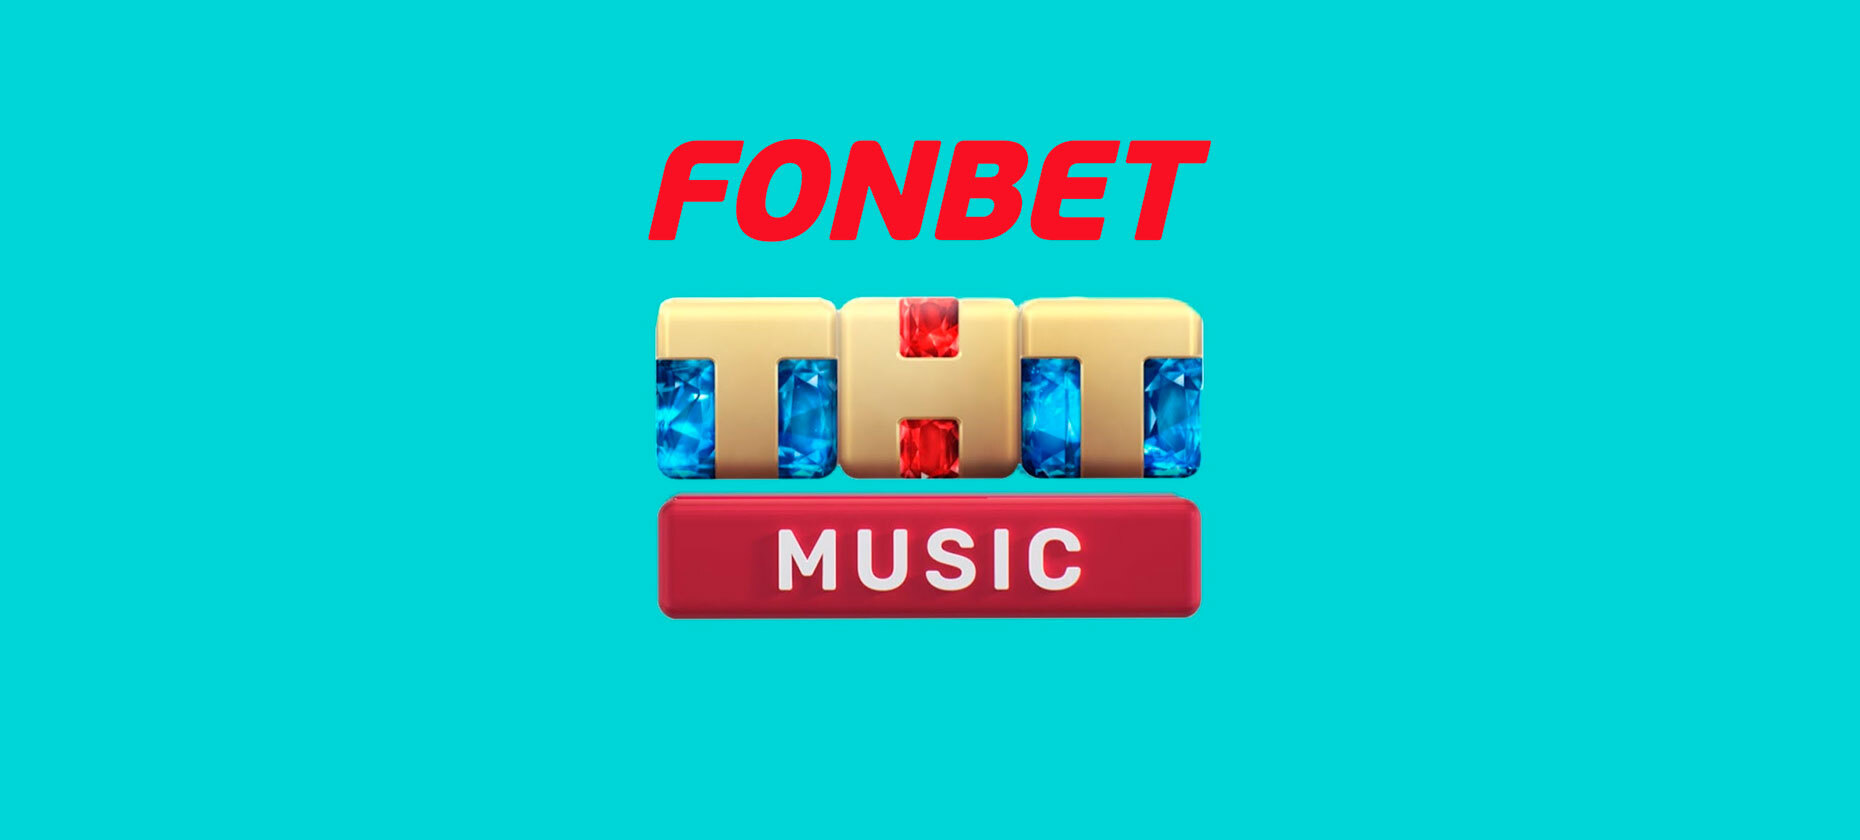 Тнт прямой эфир радио. ТНТ Music. Хозяин ТНТ. Фонбет Мьюзик. ТНТ Music переименуют в fonbet Music.